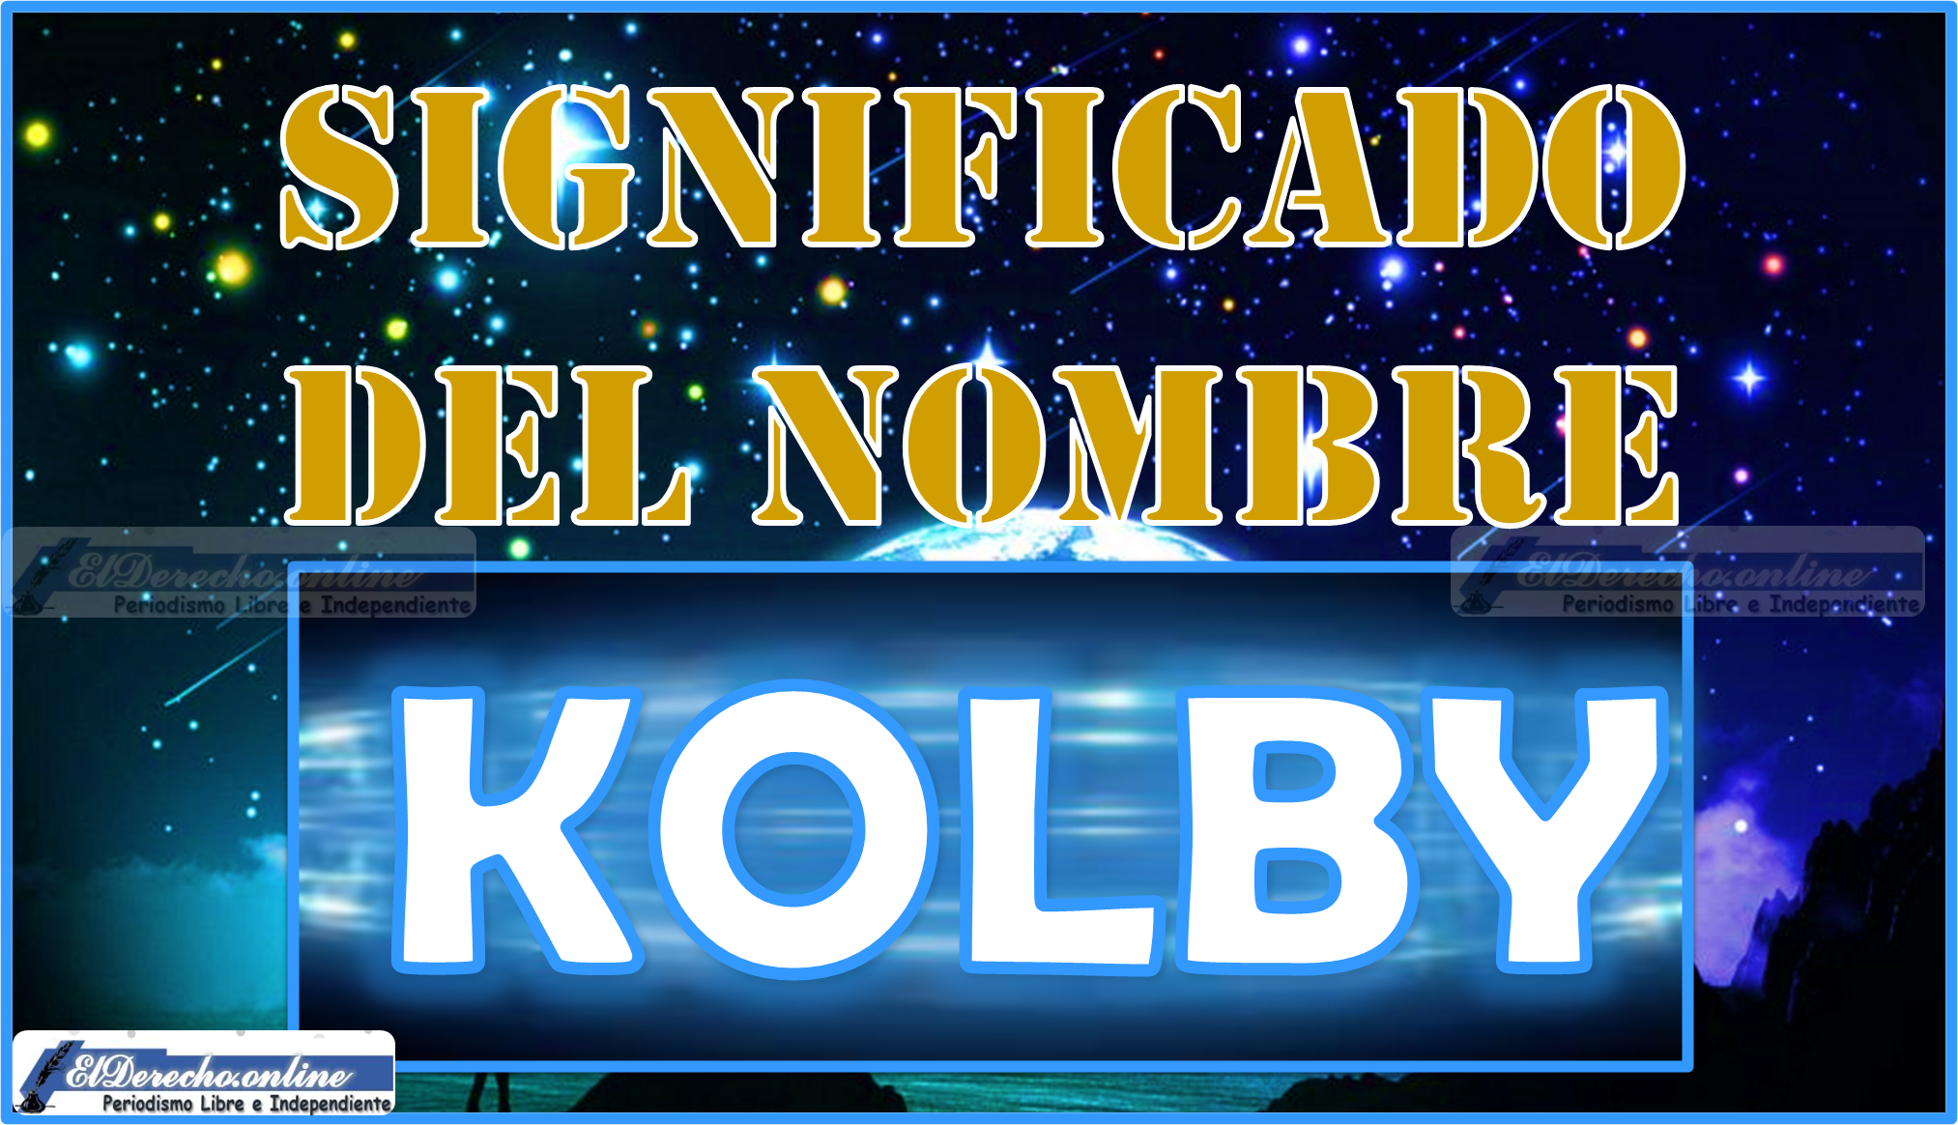 Significado del nombre Kolby, su origen y más